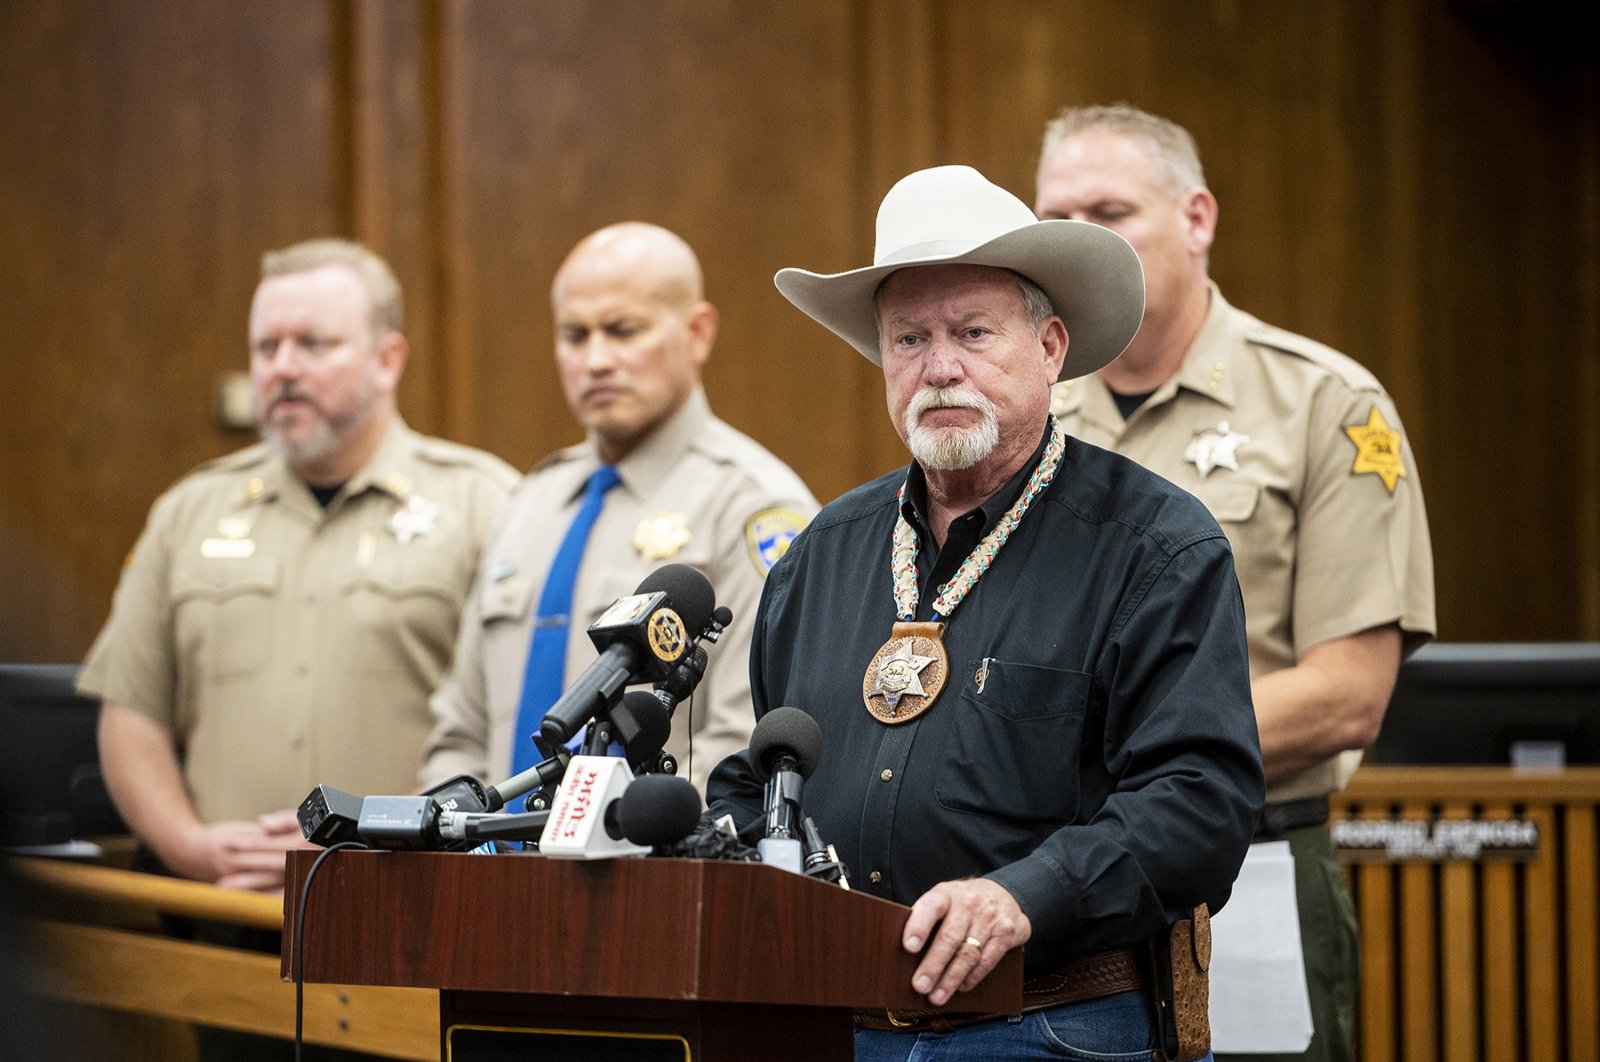 Keluarga California yang diculik pada hari Senin ditemukan tewas, kata Sheriff